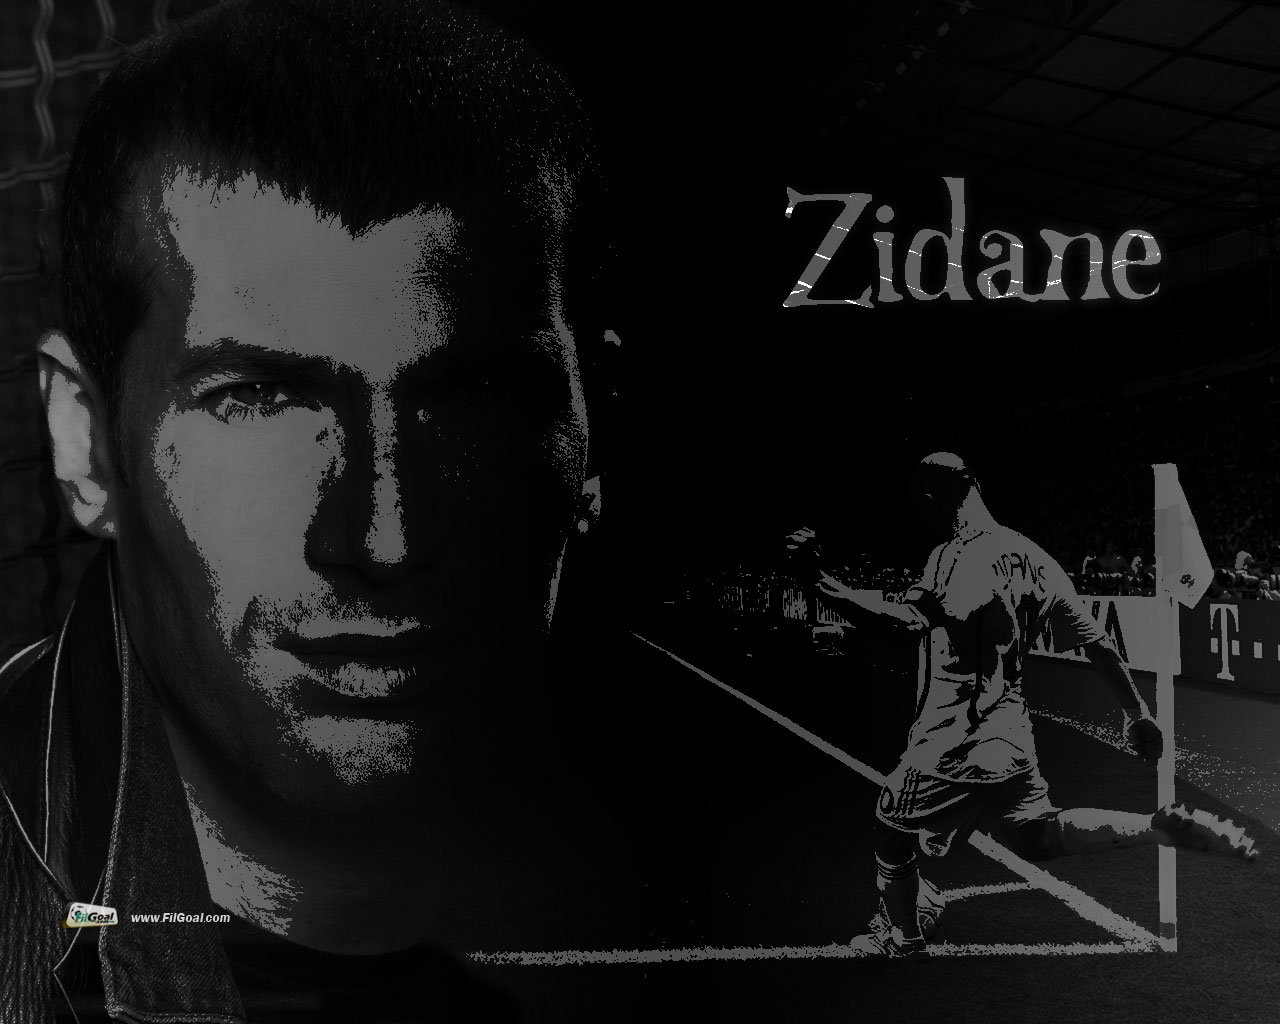 De Zidane Wallpaper Fondos Escritorio